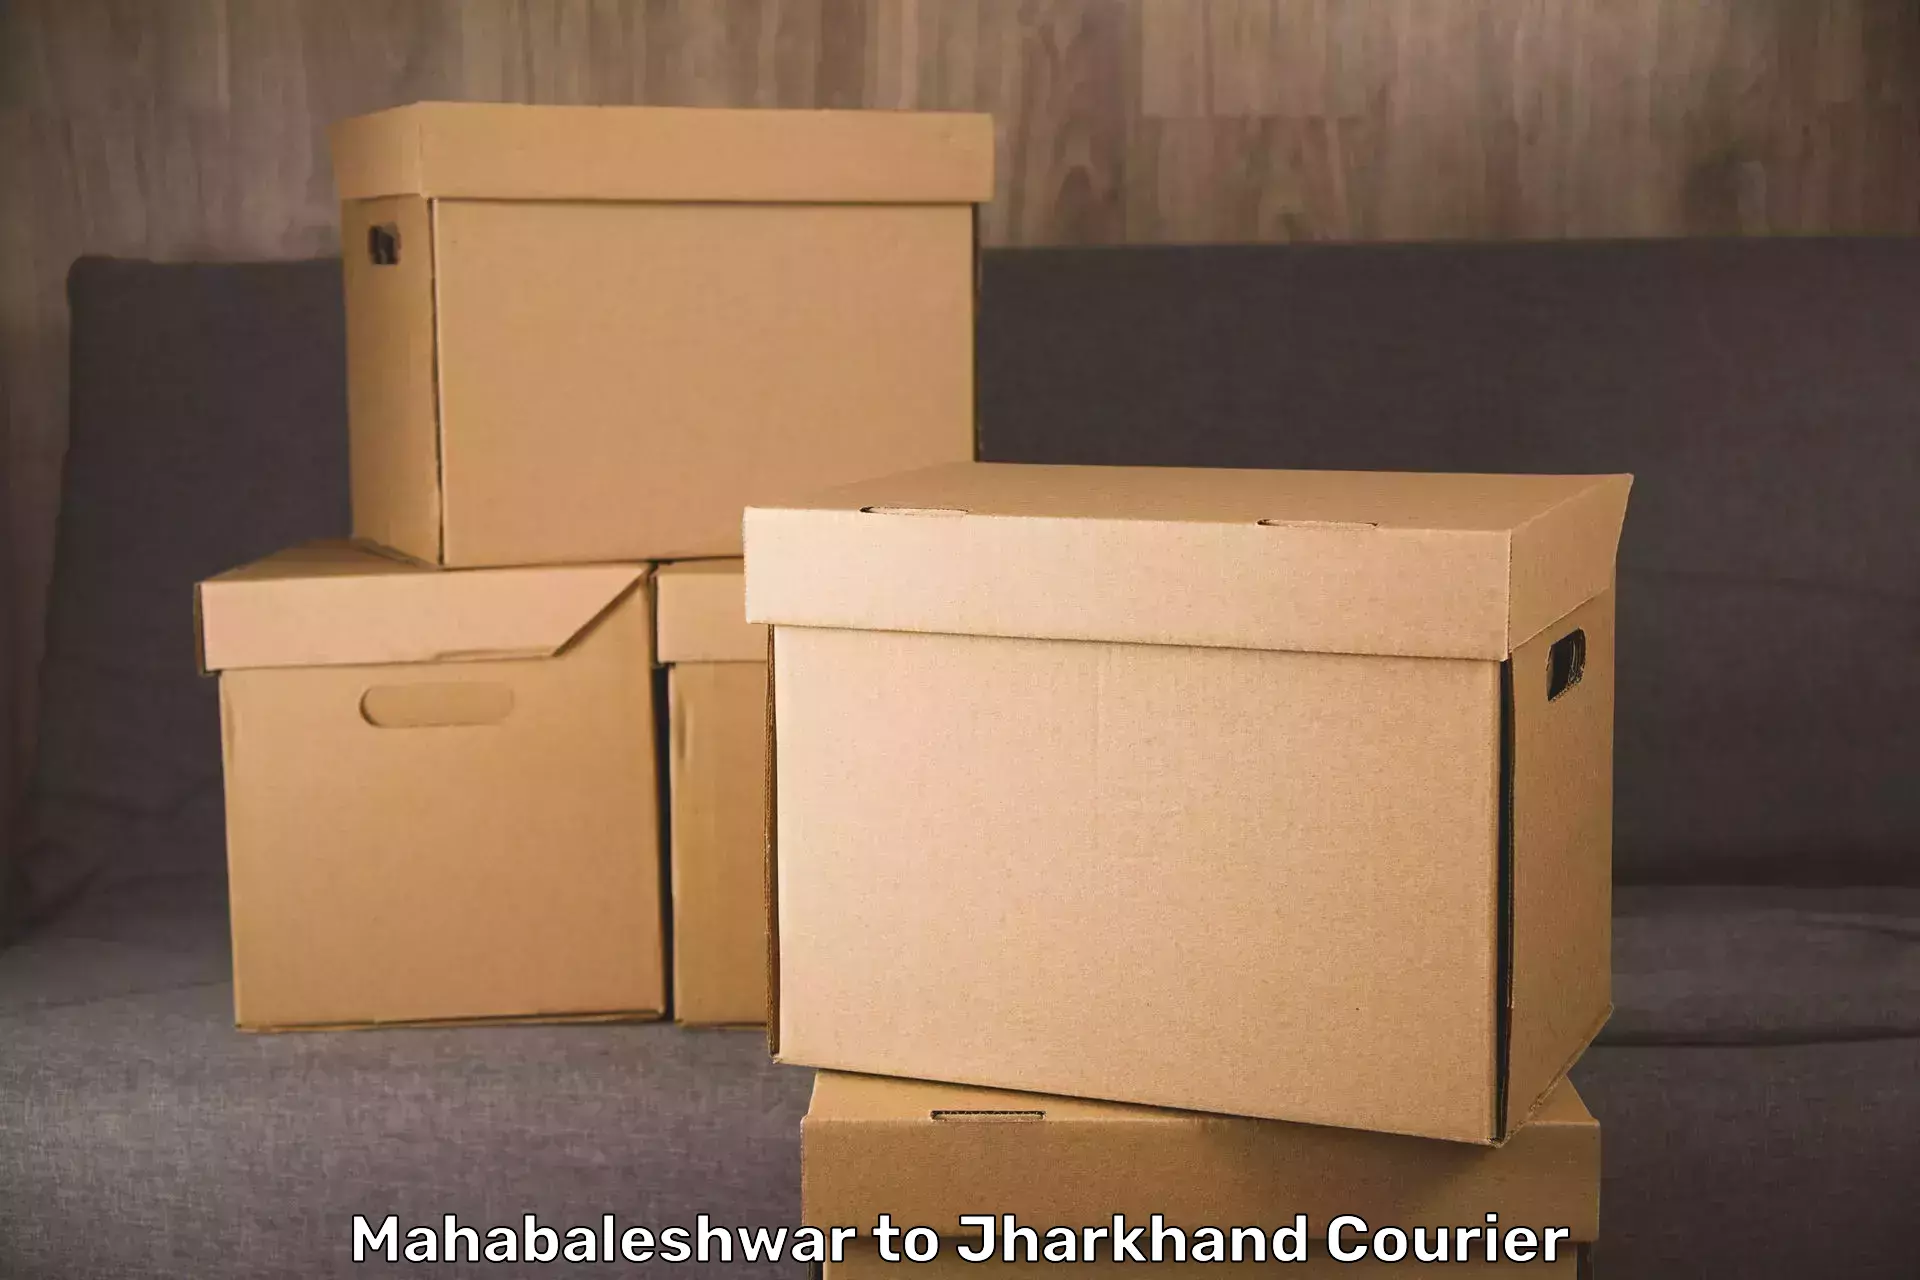 Luggage shipping specialists Mahabaleshwar to Latehar